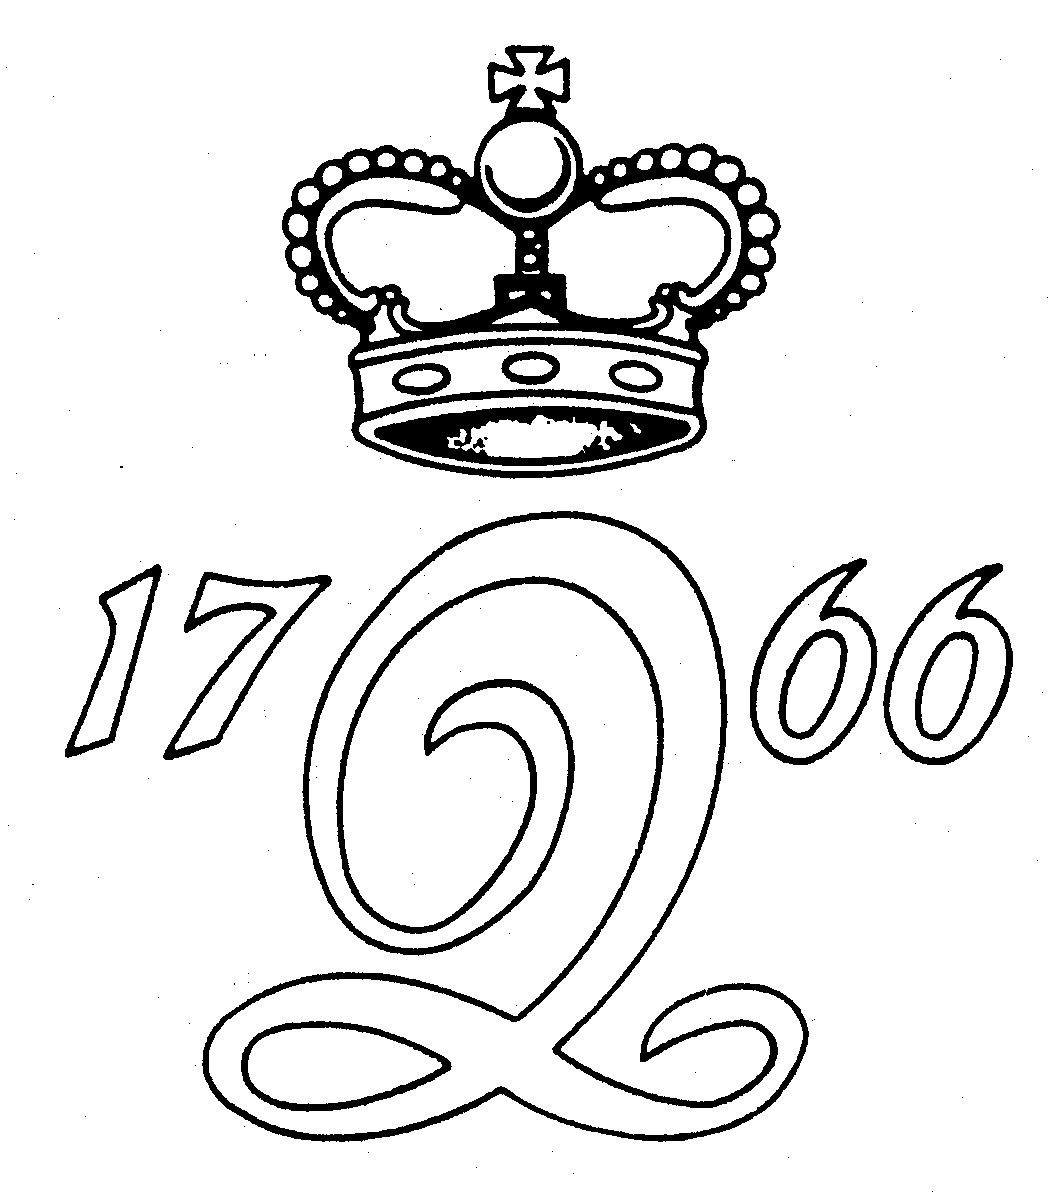  Q 1766